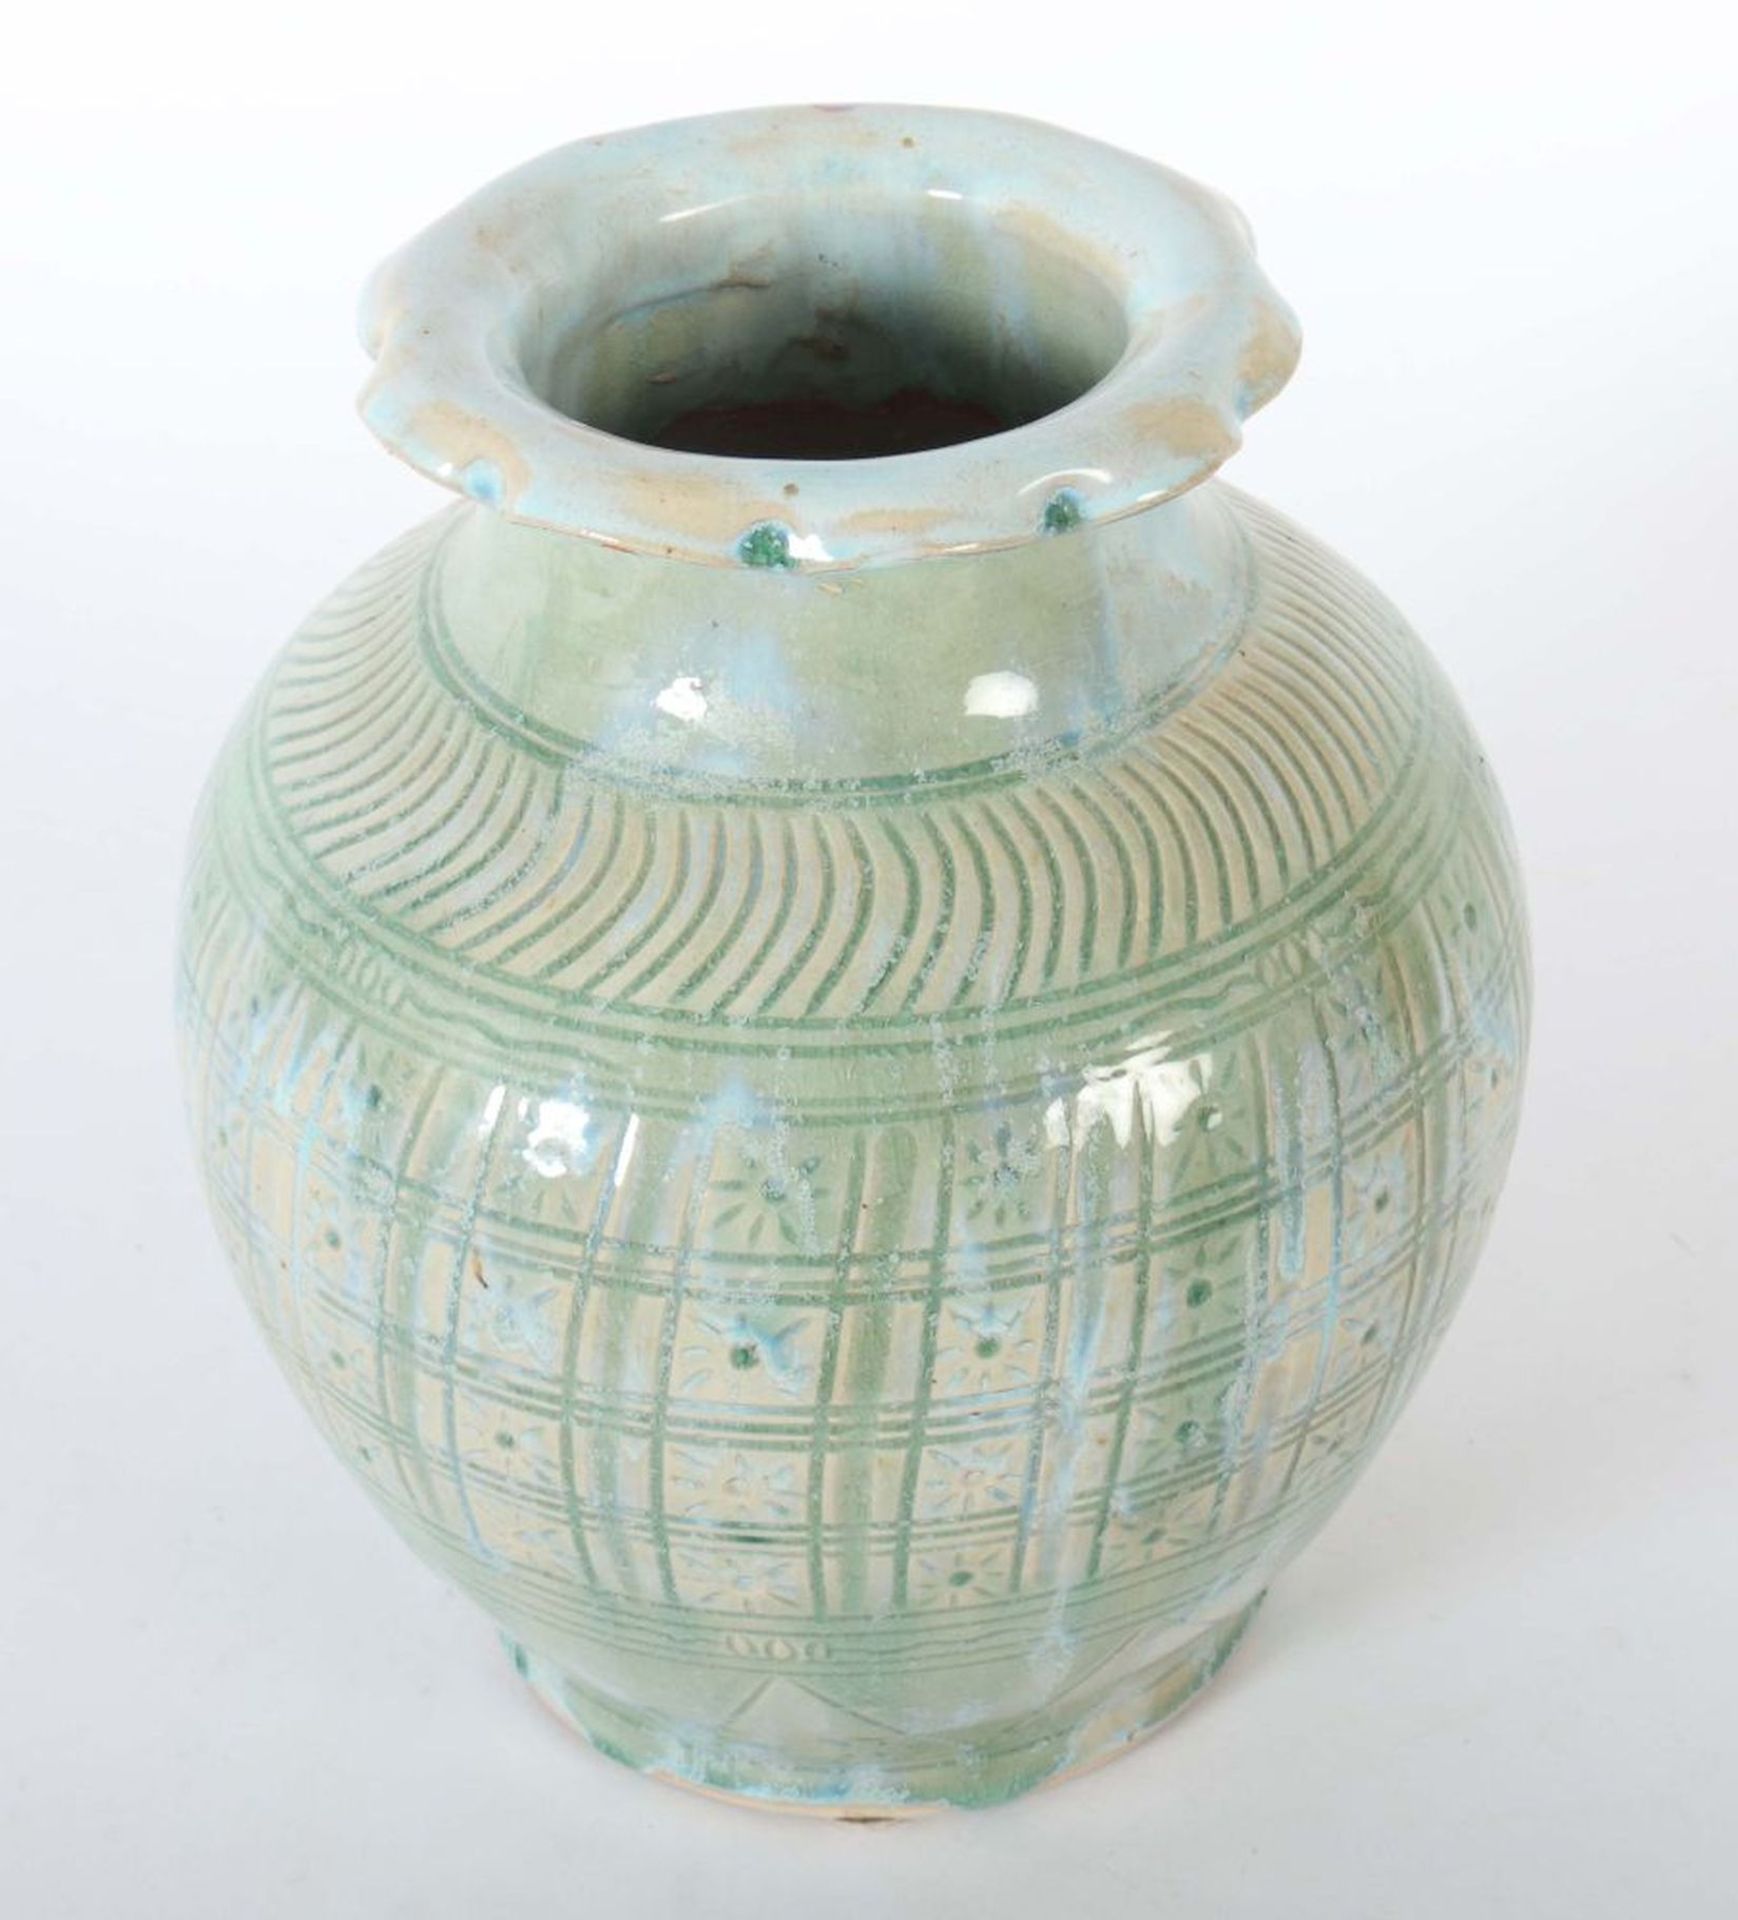 Keramikvase Wohl China, 20. Jh., - Image 2 of 3